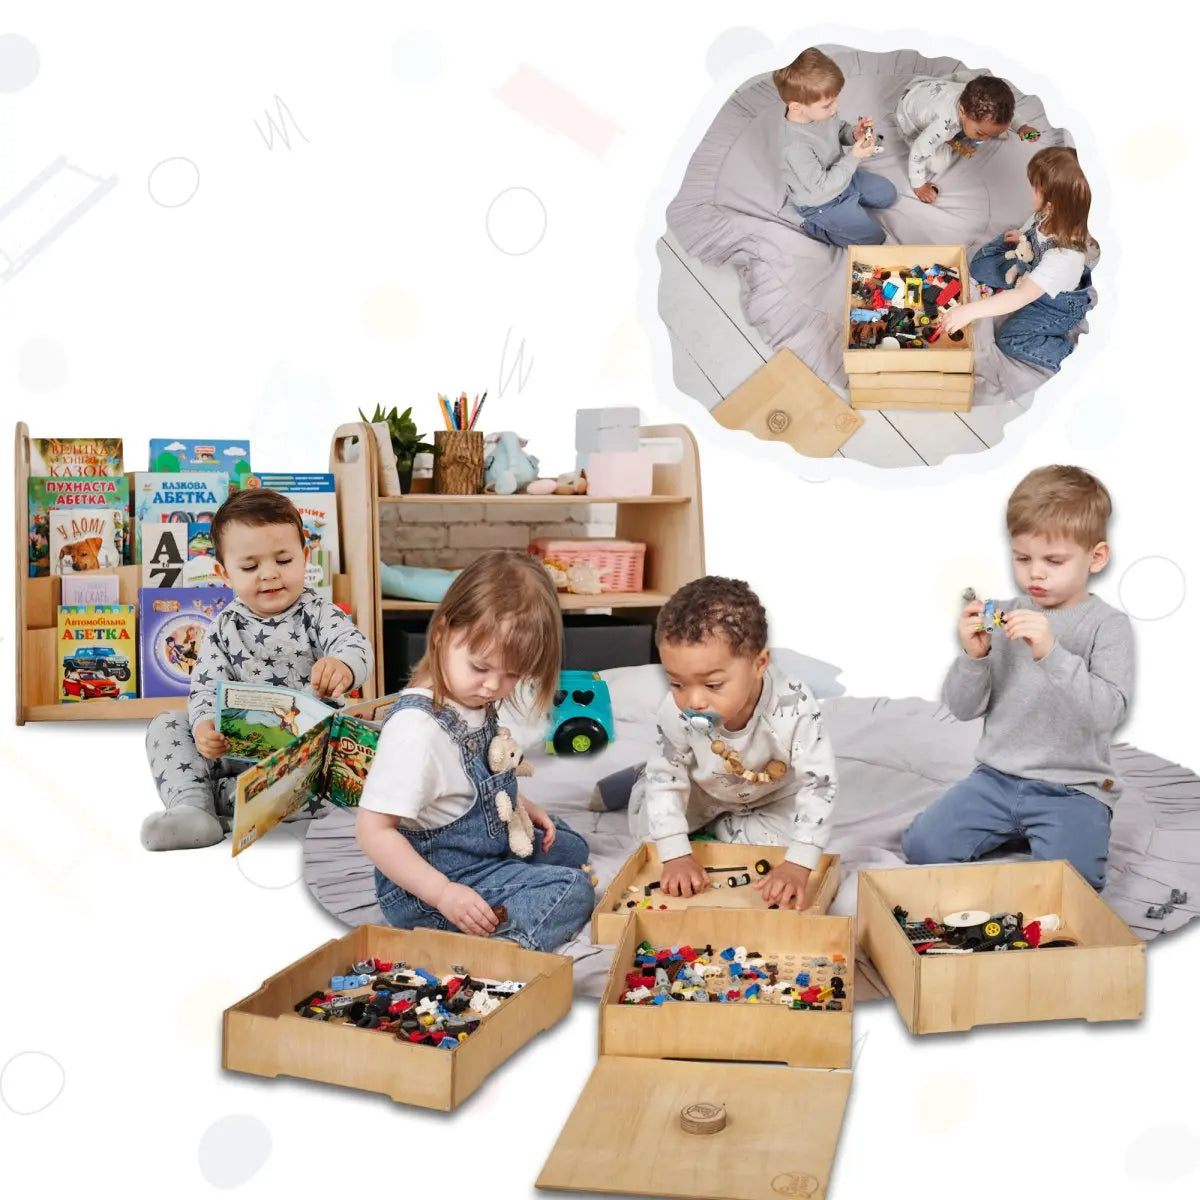 goodevas 🌟 Zauberhaftes Montessori-Regalset von Goodevas: Bücher, Spielzeug & Holzlager! 📚🧸🌳 Mach Platz für magische Momente mit diesem bezaubernden Trio aus verwunschenen Regalen! ✨ Ideal für die kleine Zauberer und Erfinder da draußen! 🧙‍♂️🌈✨